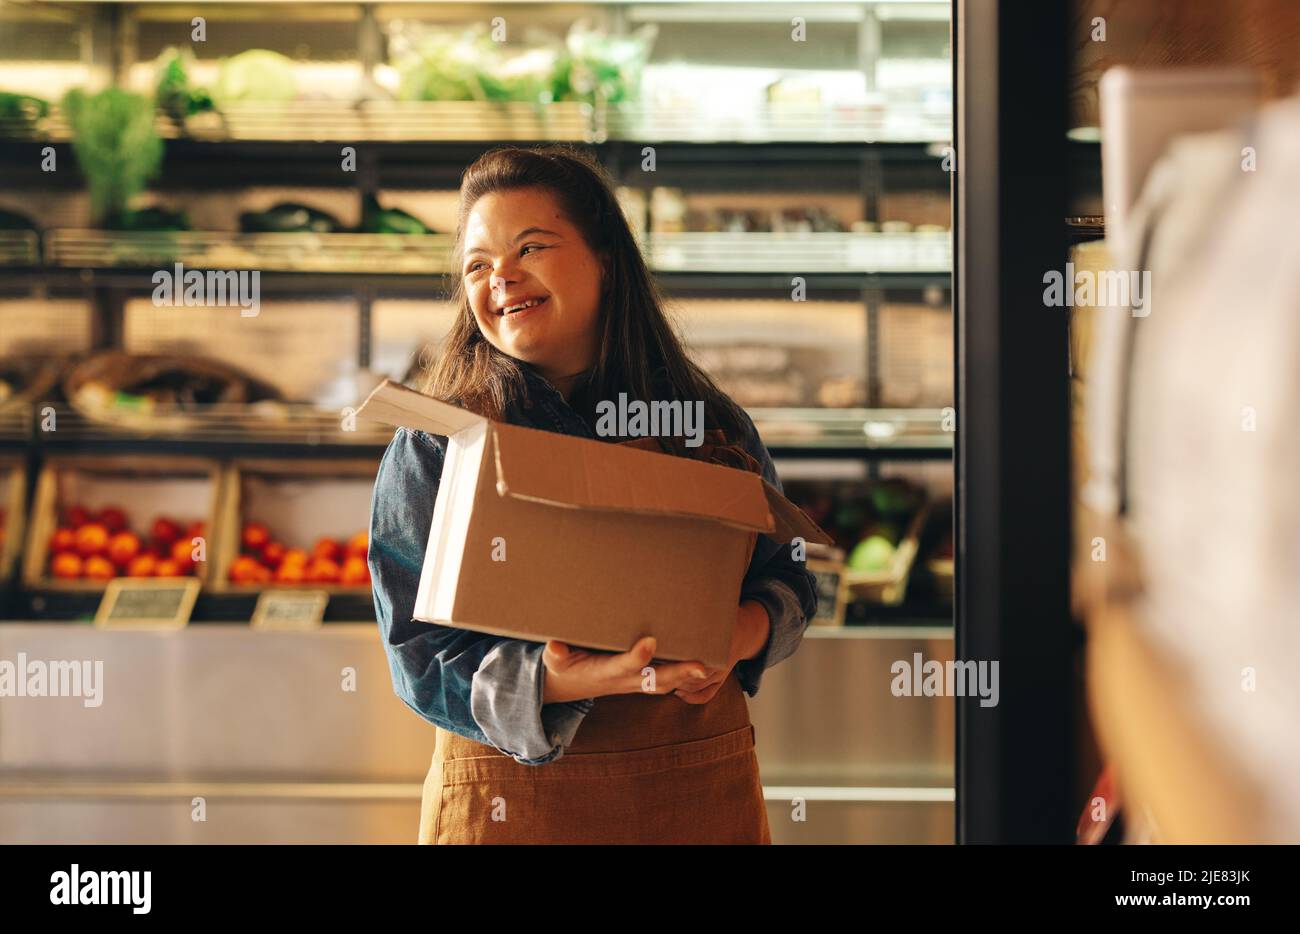 Femme atteinte du syndrome de Down souriant en travaillant comme un commerçant dans une épicerie. Femme ayant un handicap intellectuel réaffirmant son travail Banque D'Images